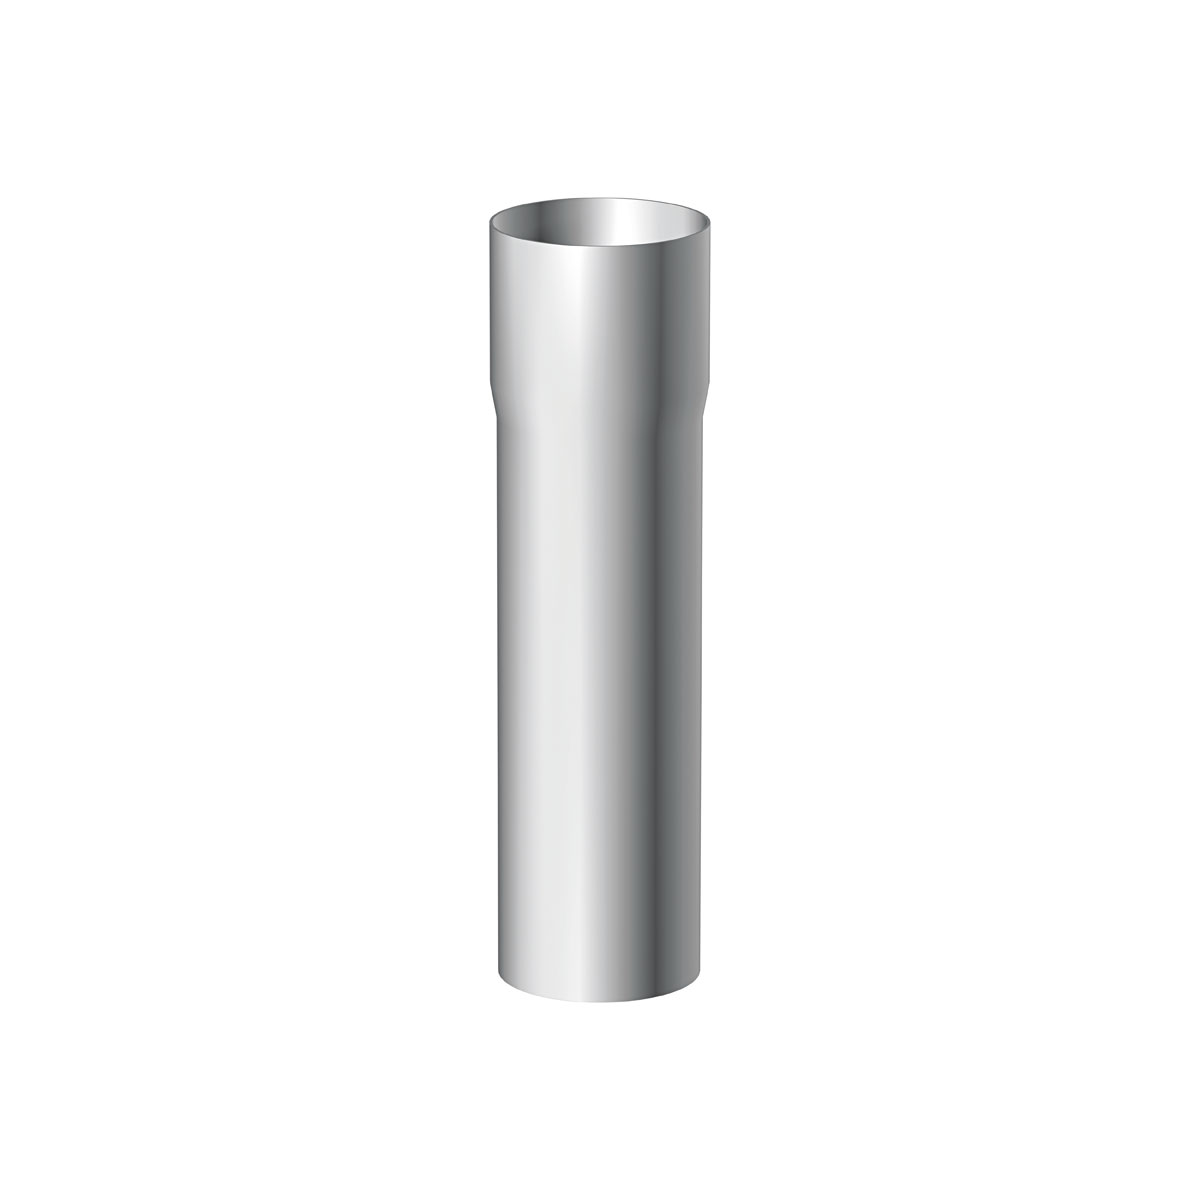 Marley Metall-Titan-Zink-Rohr 1 Meter 80 mm